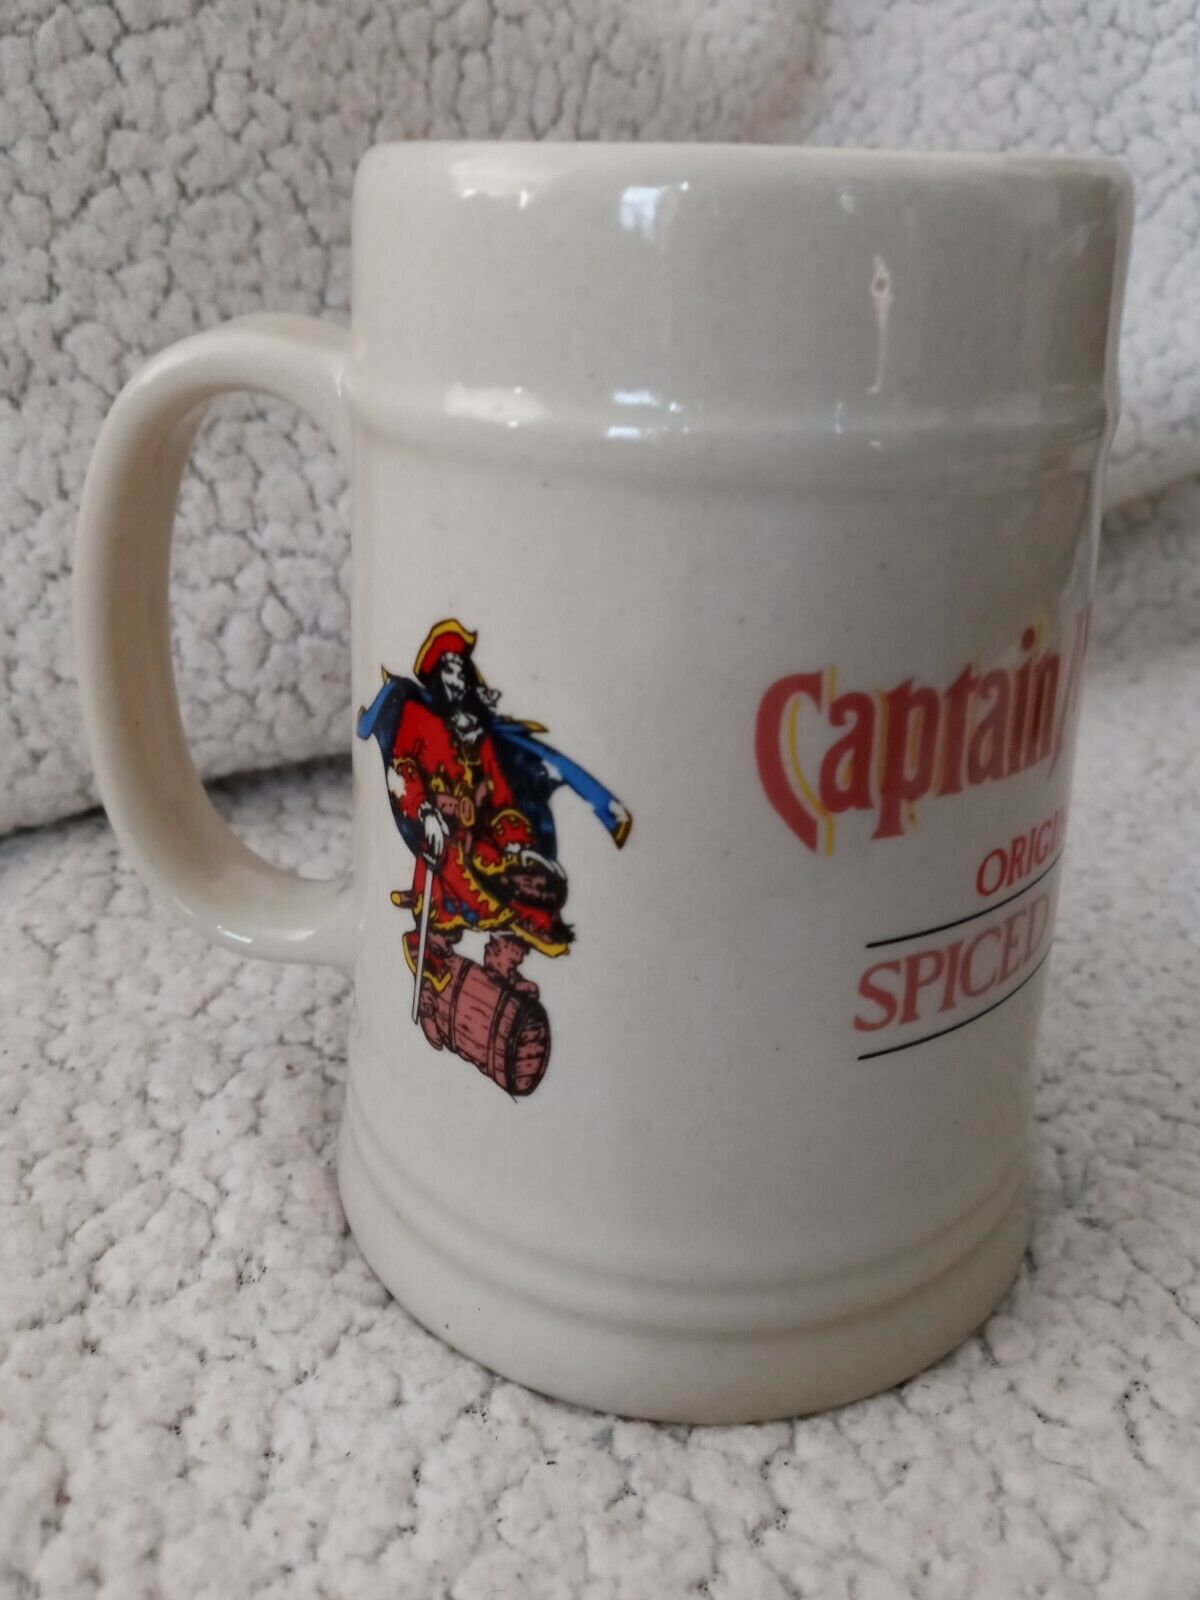 Captain Morgan Mug Beer Stein Tankard Rum Cup Ceramic Pirate